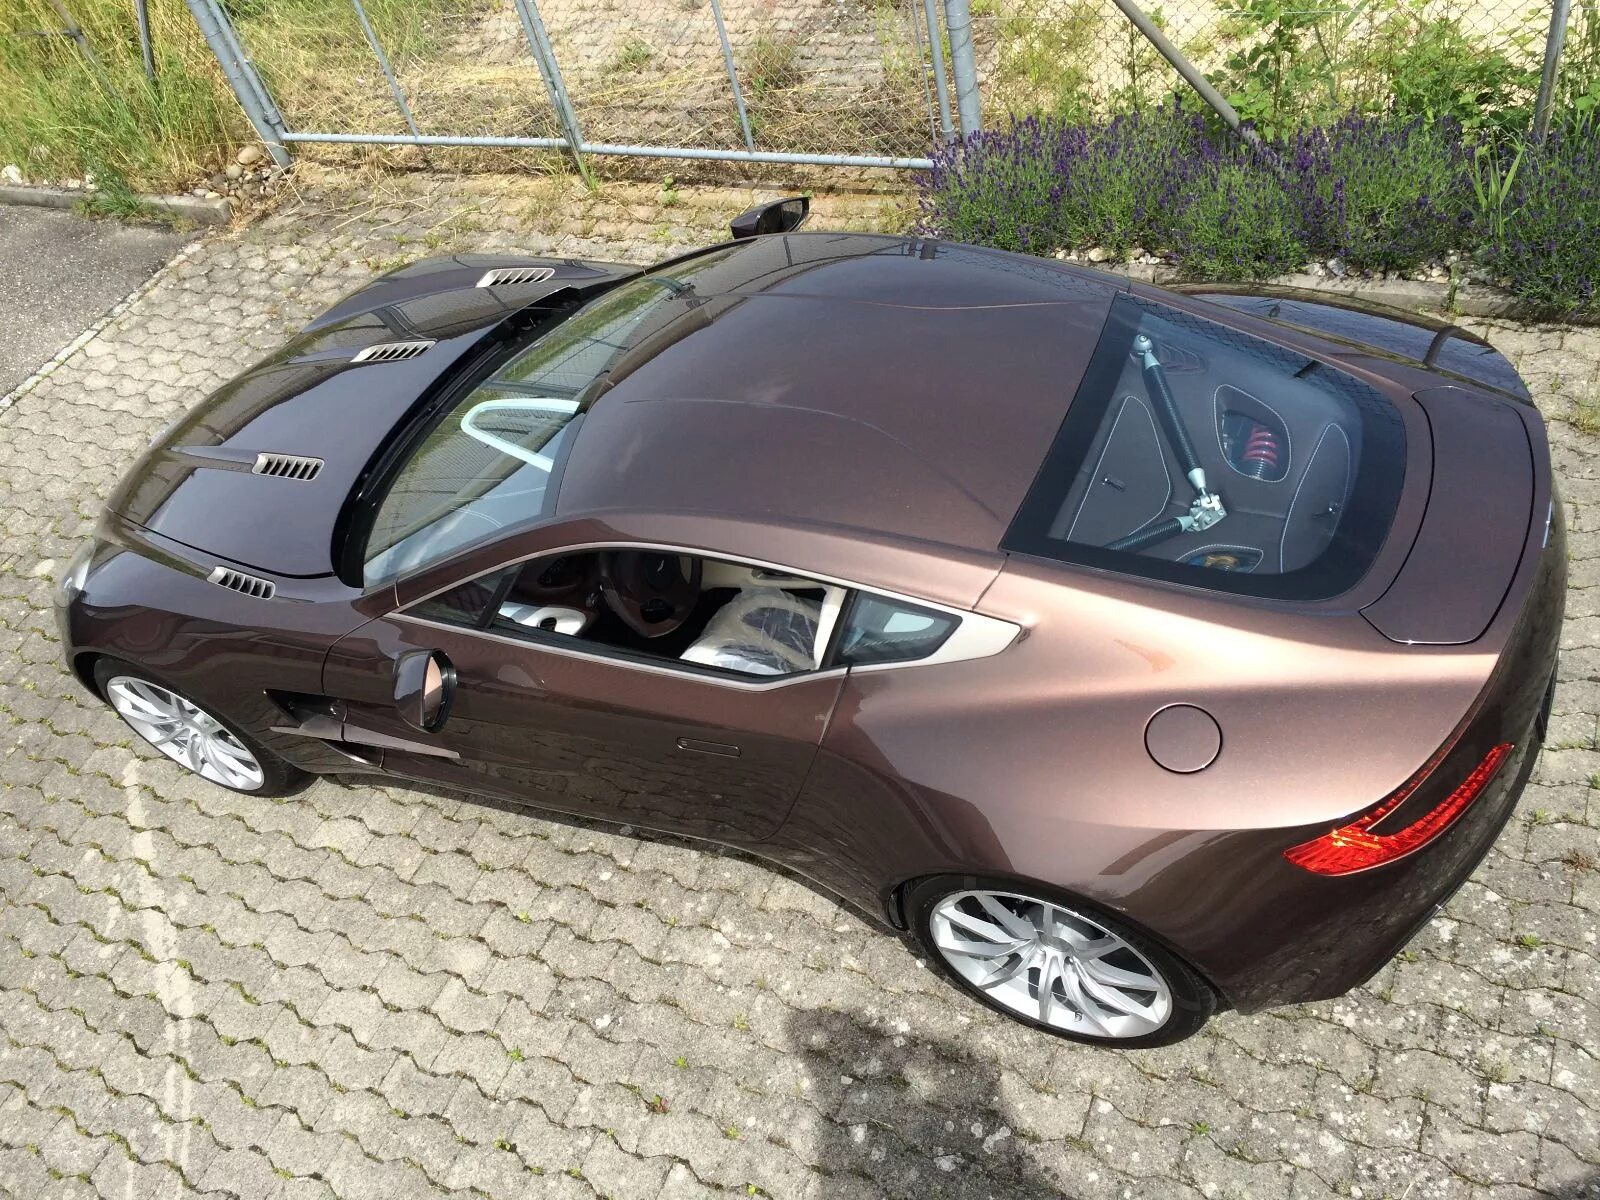 Машина за миллион рублей 2024 какую купить. Aston Martin one-77. Красивые машины недорогие. Интересные авто. Недорогая качественная машина.